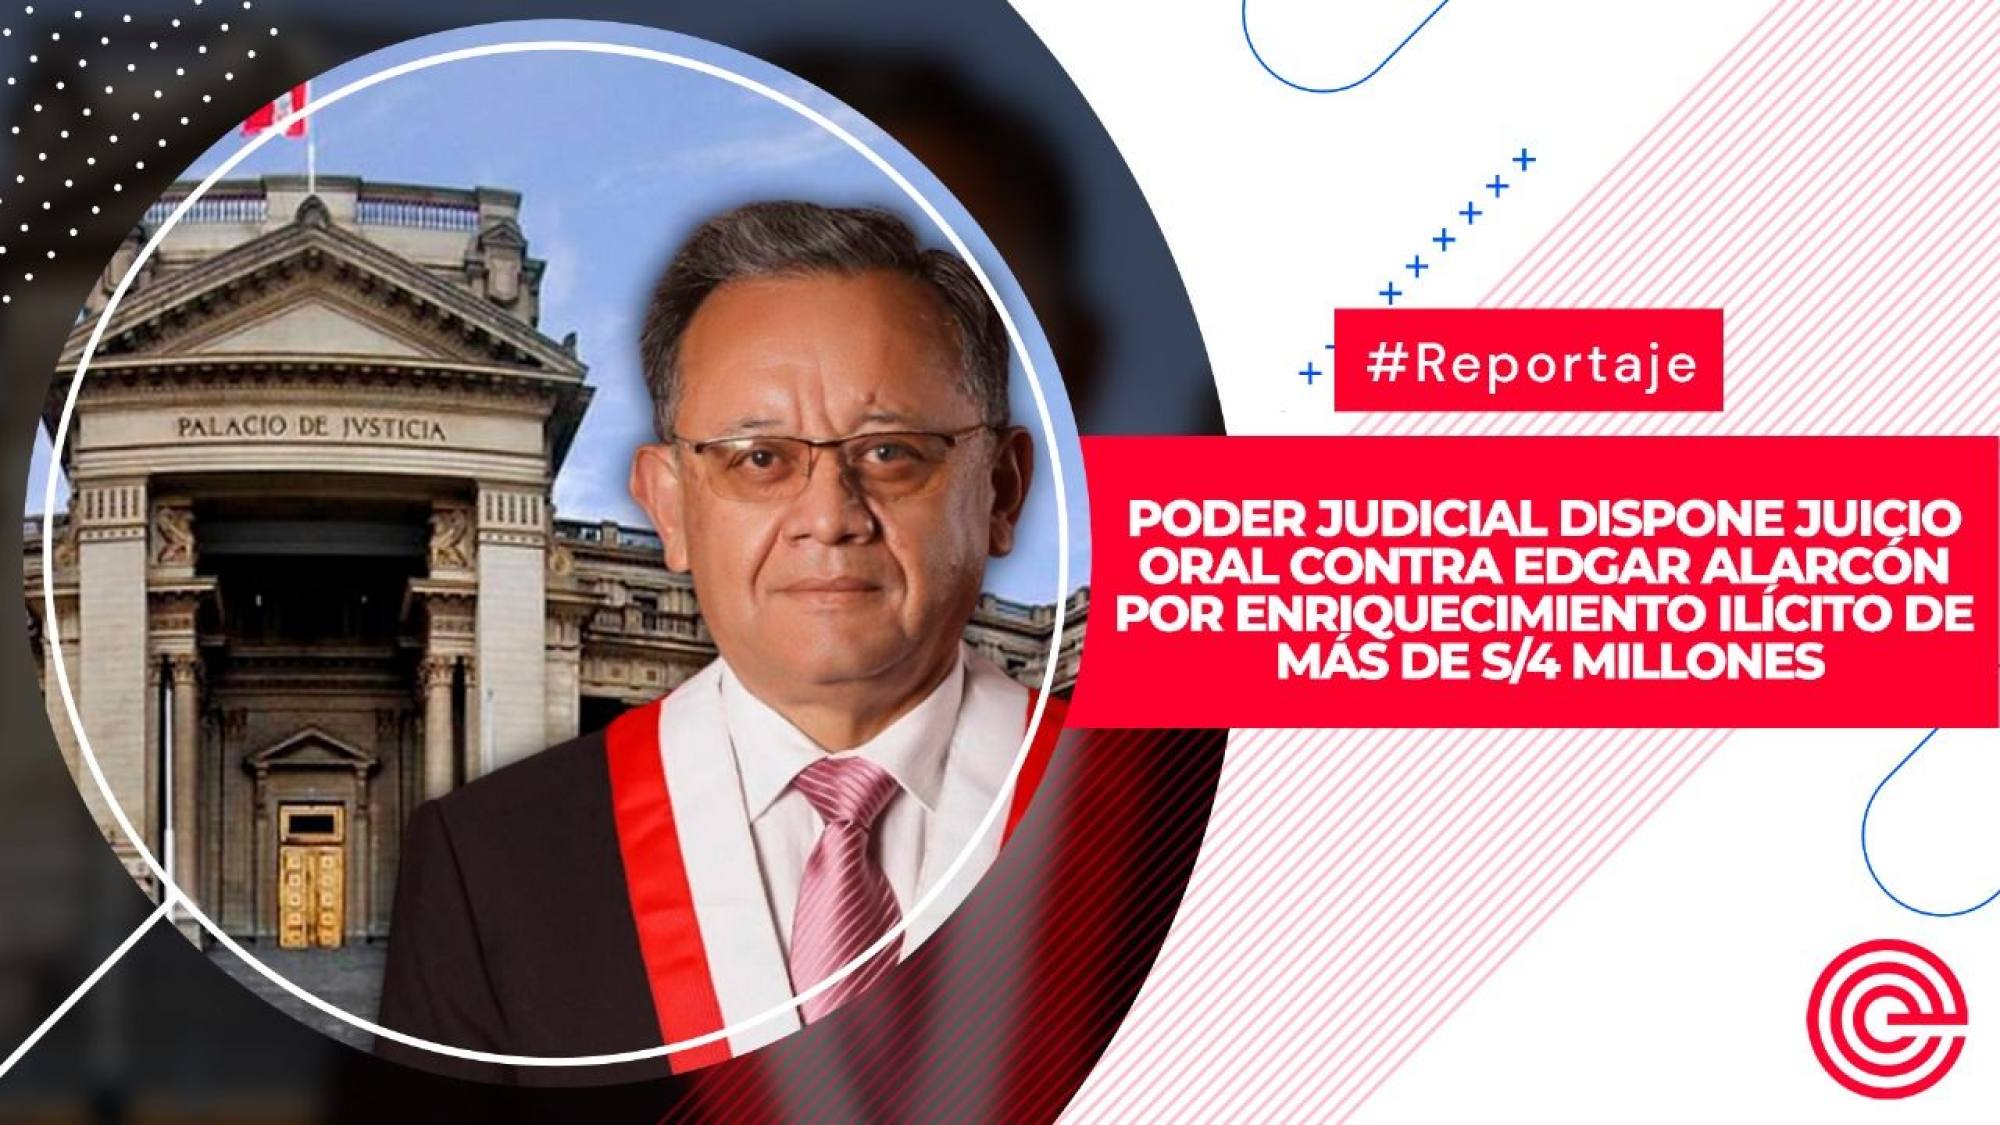 Poder Judicial dispone juicio oral contra Edgar Alarcón por enriquecimiento ilícito de más de S/4 millones, Epicentro TV